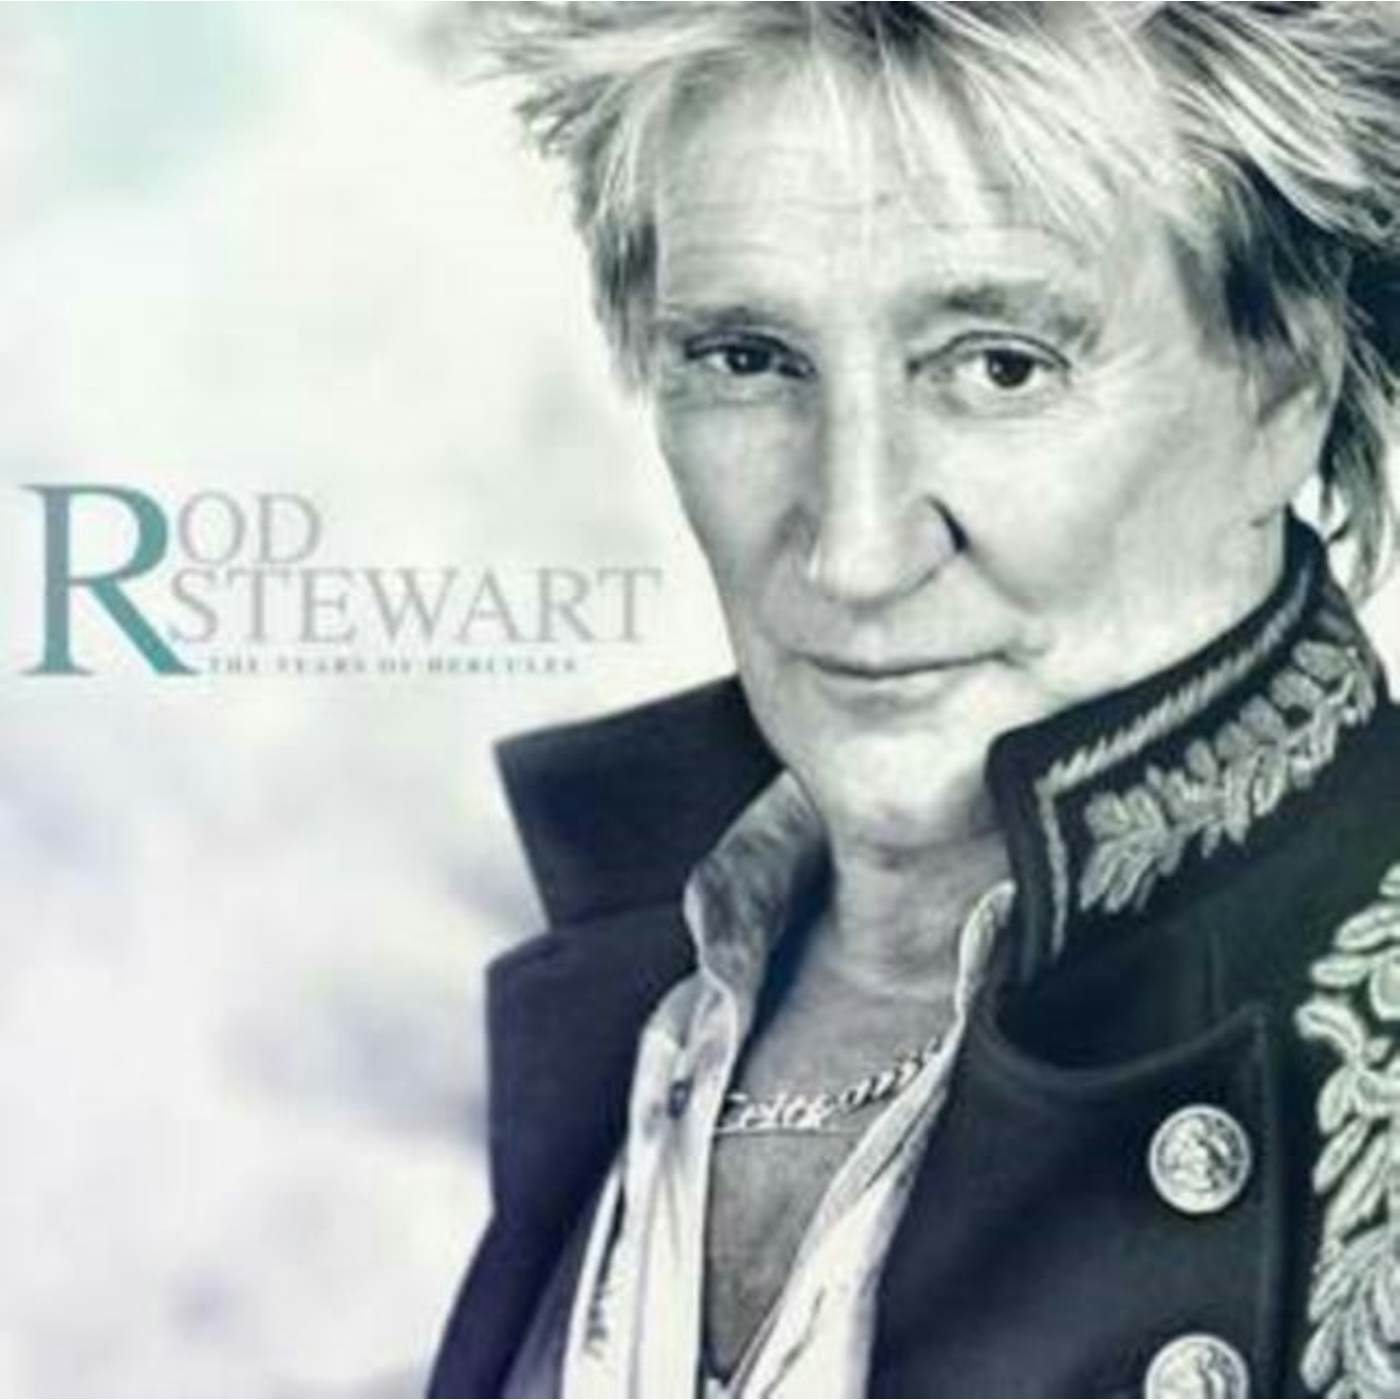 Rod Stewart LP Vinyl Record - The Tears Of Hercules